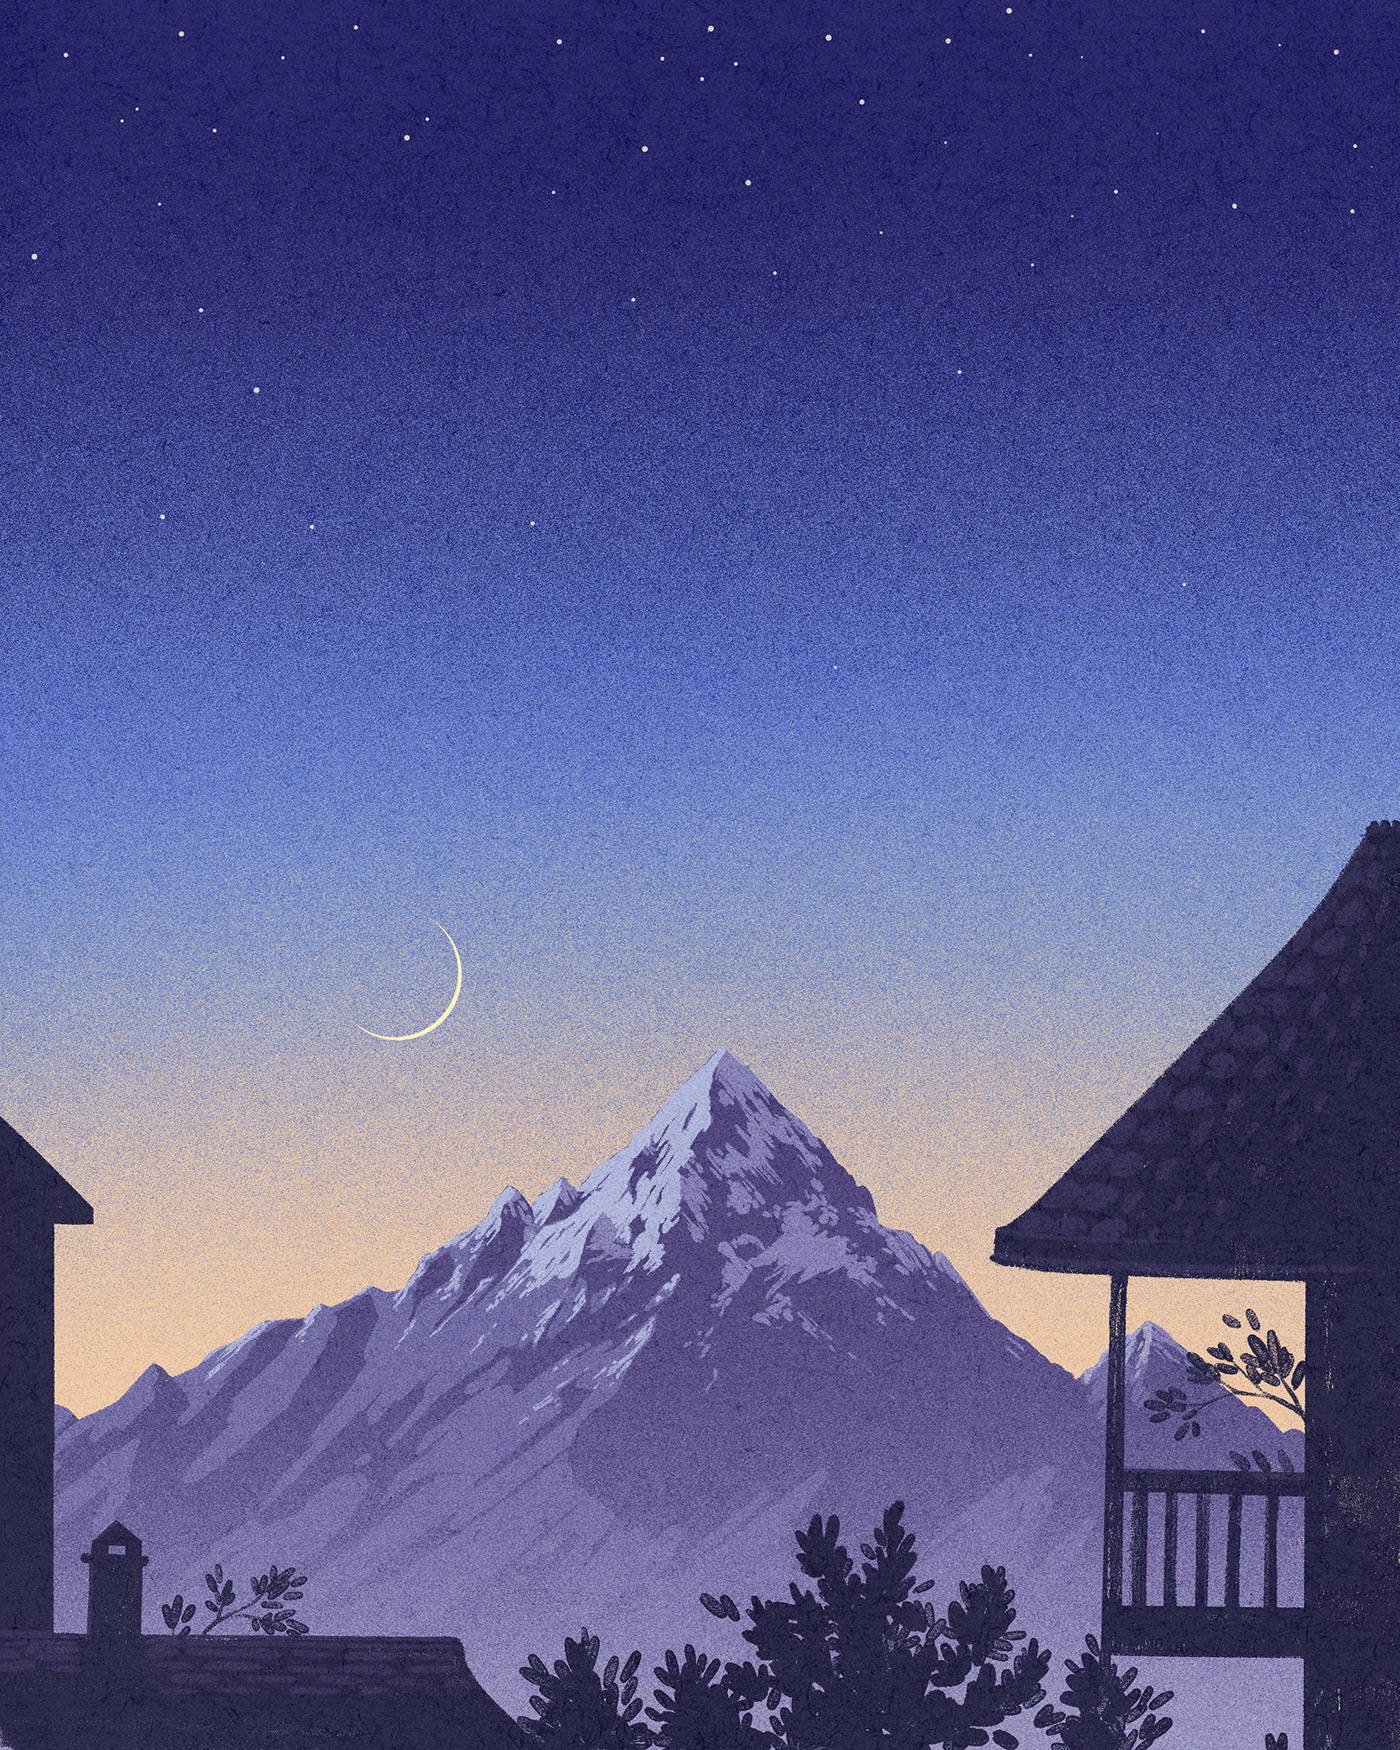 Landscape mountains vintage poster Poster Design vintage illustration alps ILLUSTRATION  magic realism